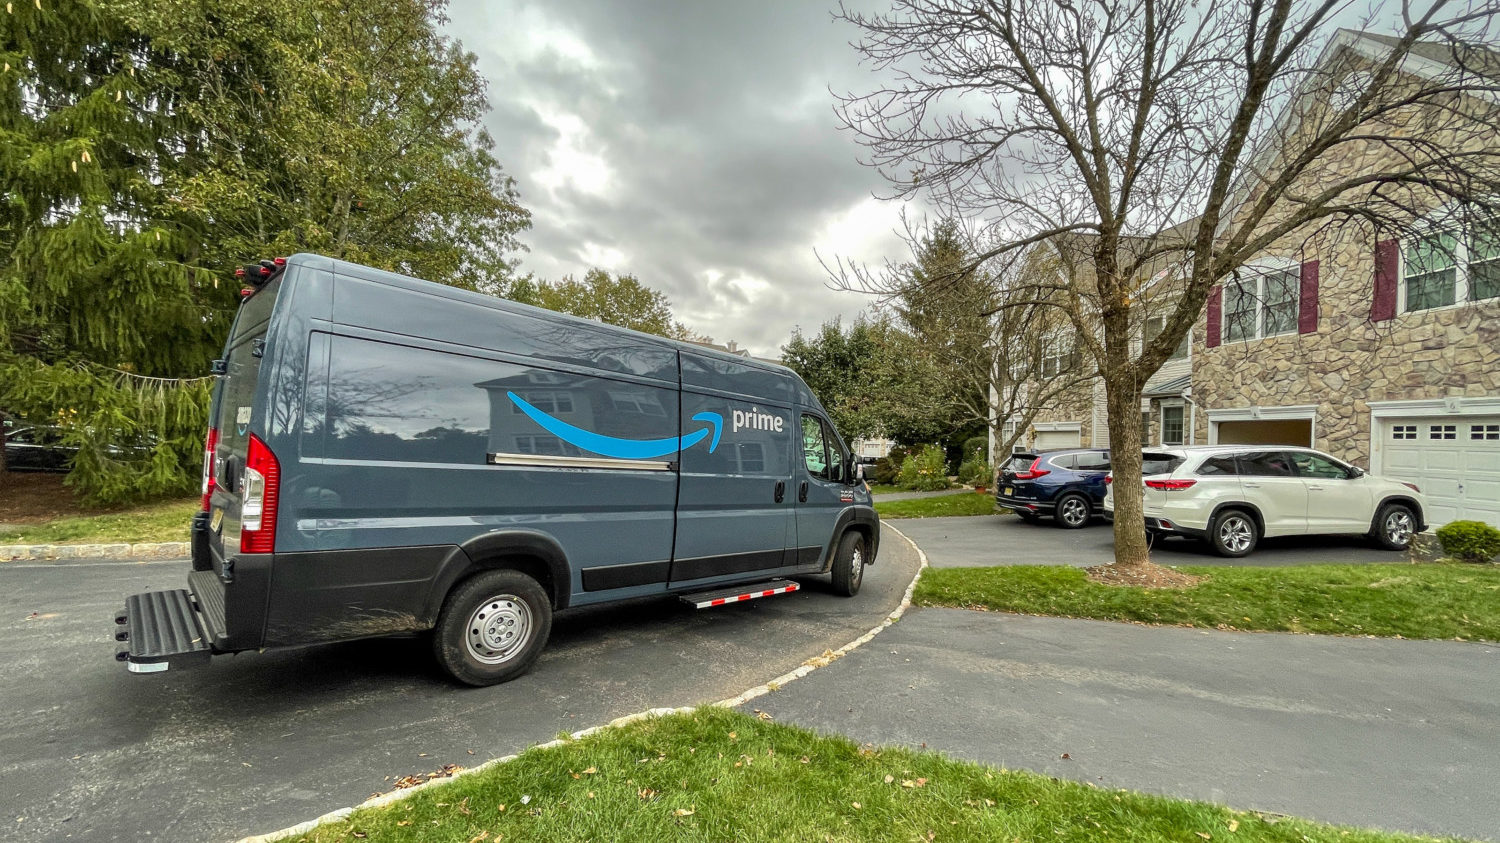 Amazon van drives in neighborhood